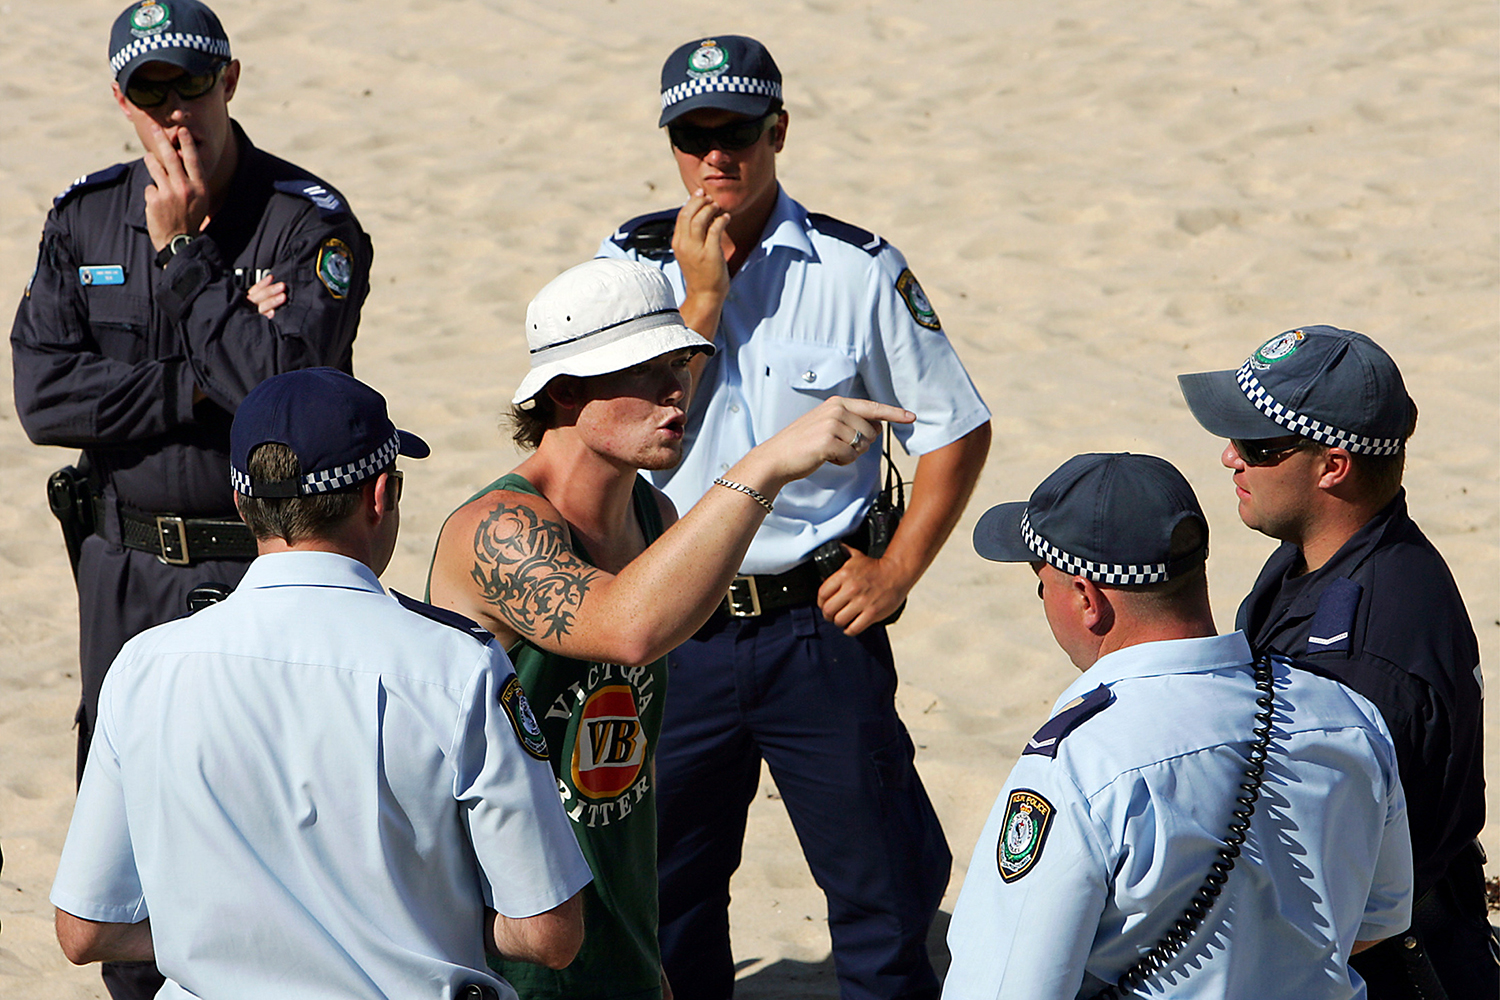 Una ola de calor lleva a los habitantes de Sydney a refugiarse en el alcohol